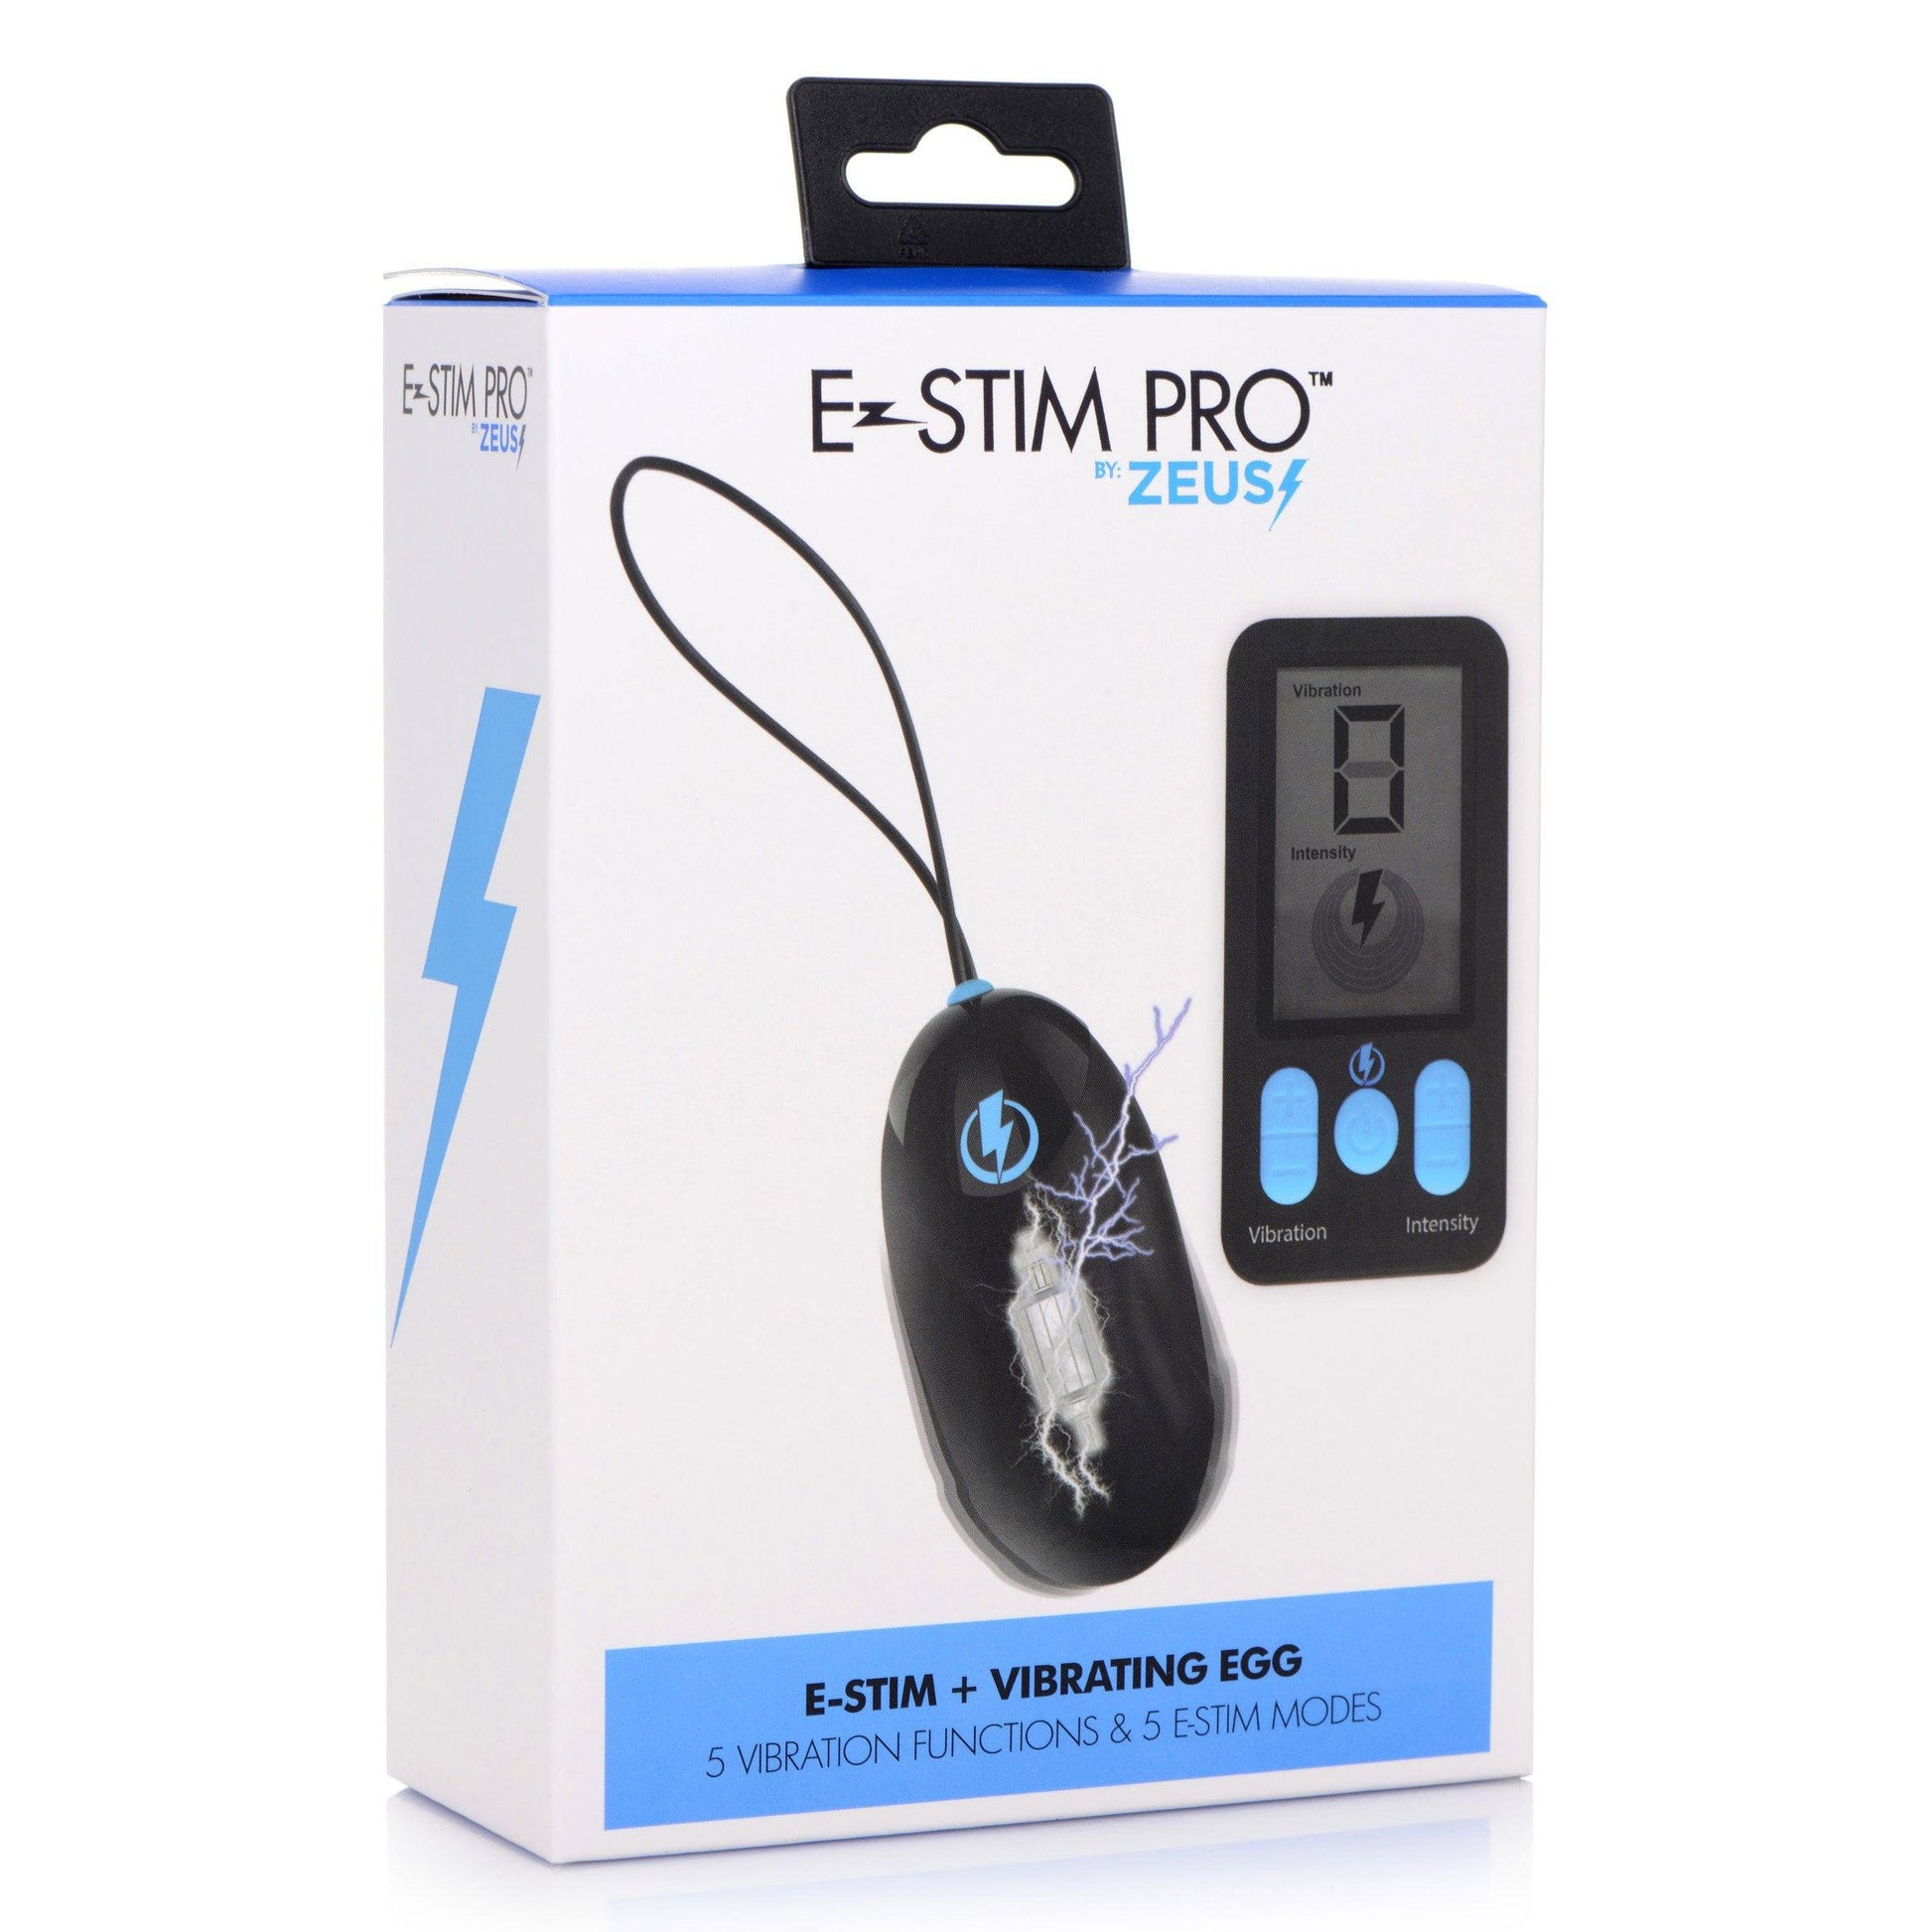 E-Stim Pro Silicone Vibrating Egg With Remote  Control - Black